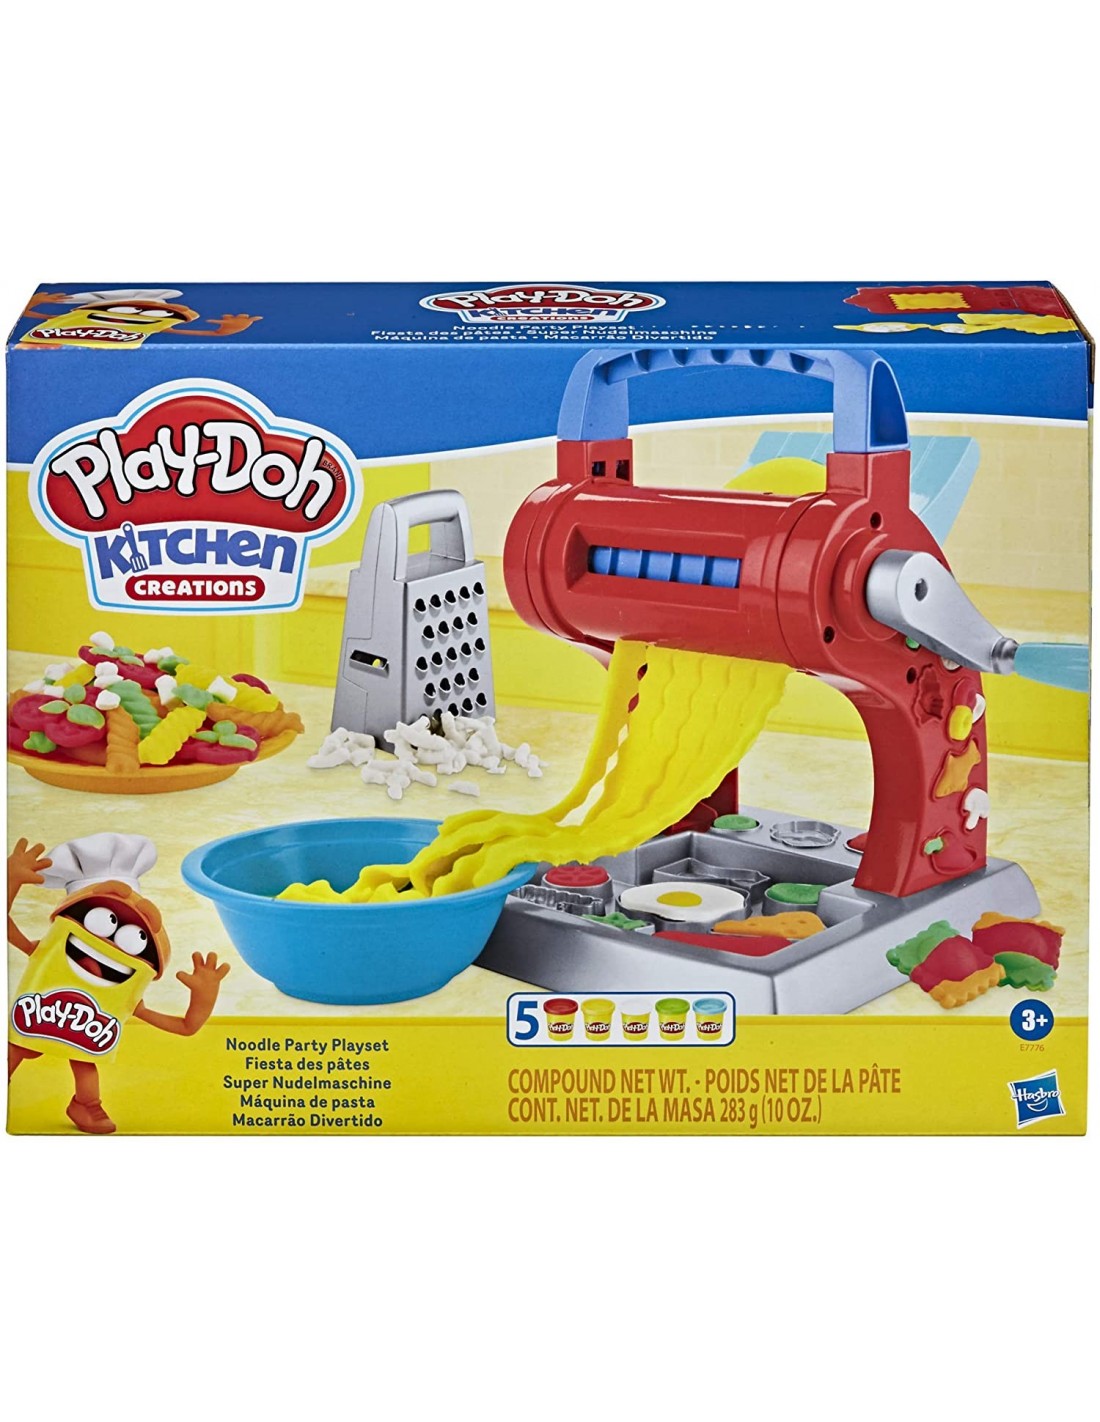 《Play-Doh 培樂多》培樂多廚房系列 製麵料理機新版 東喬精品百貨